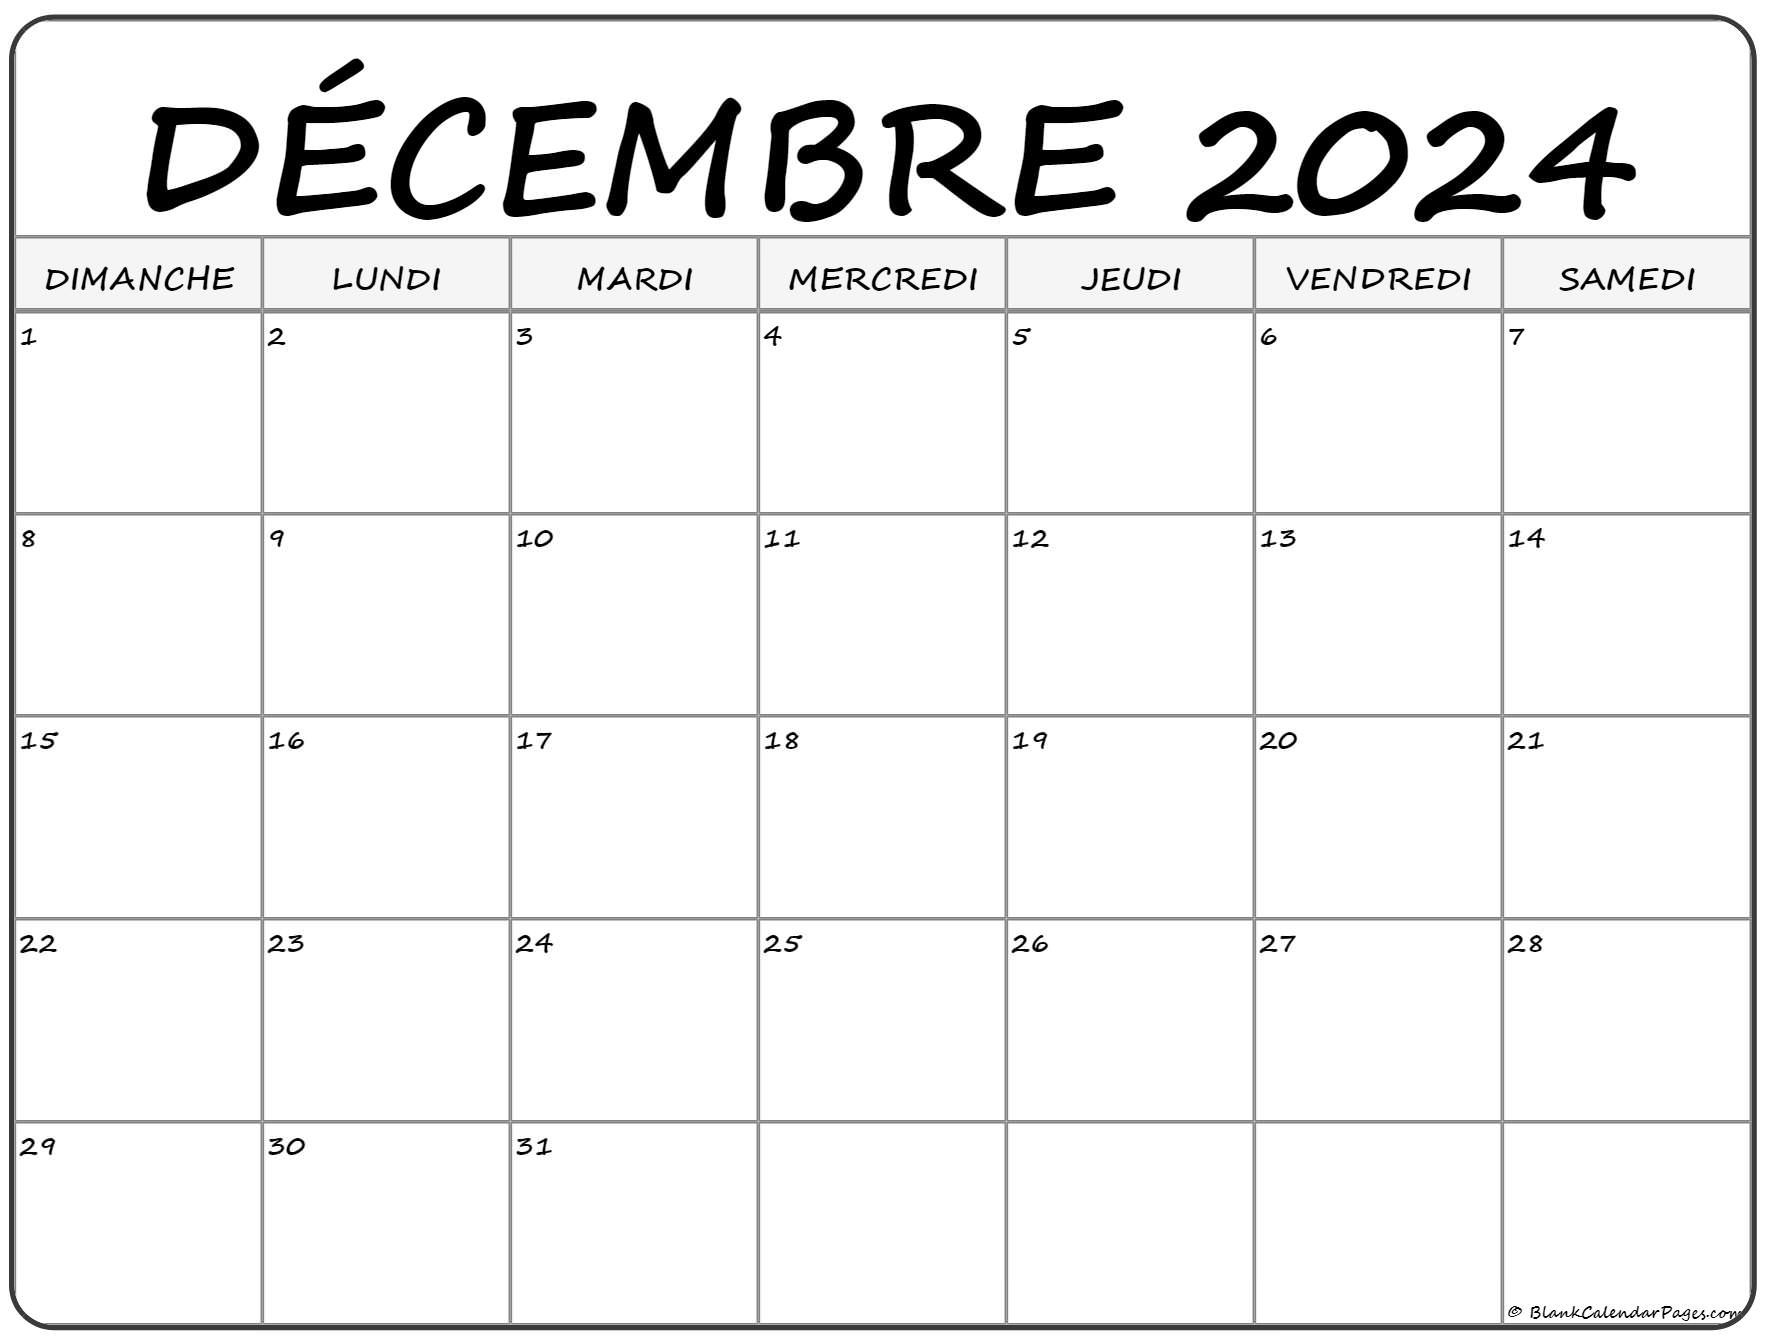 Calendrier Décembre 2022 décembre 2022 calendrier imprimable | Calendrier gratuit